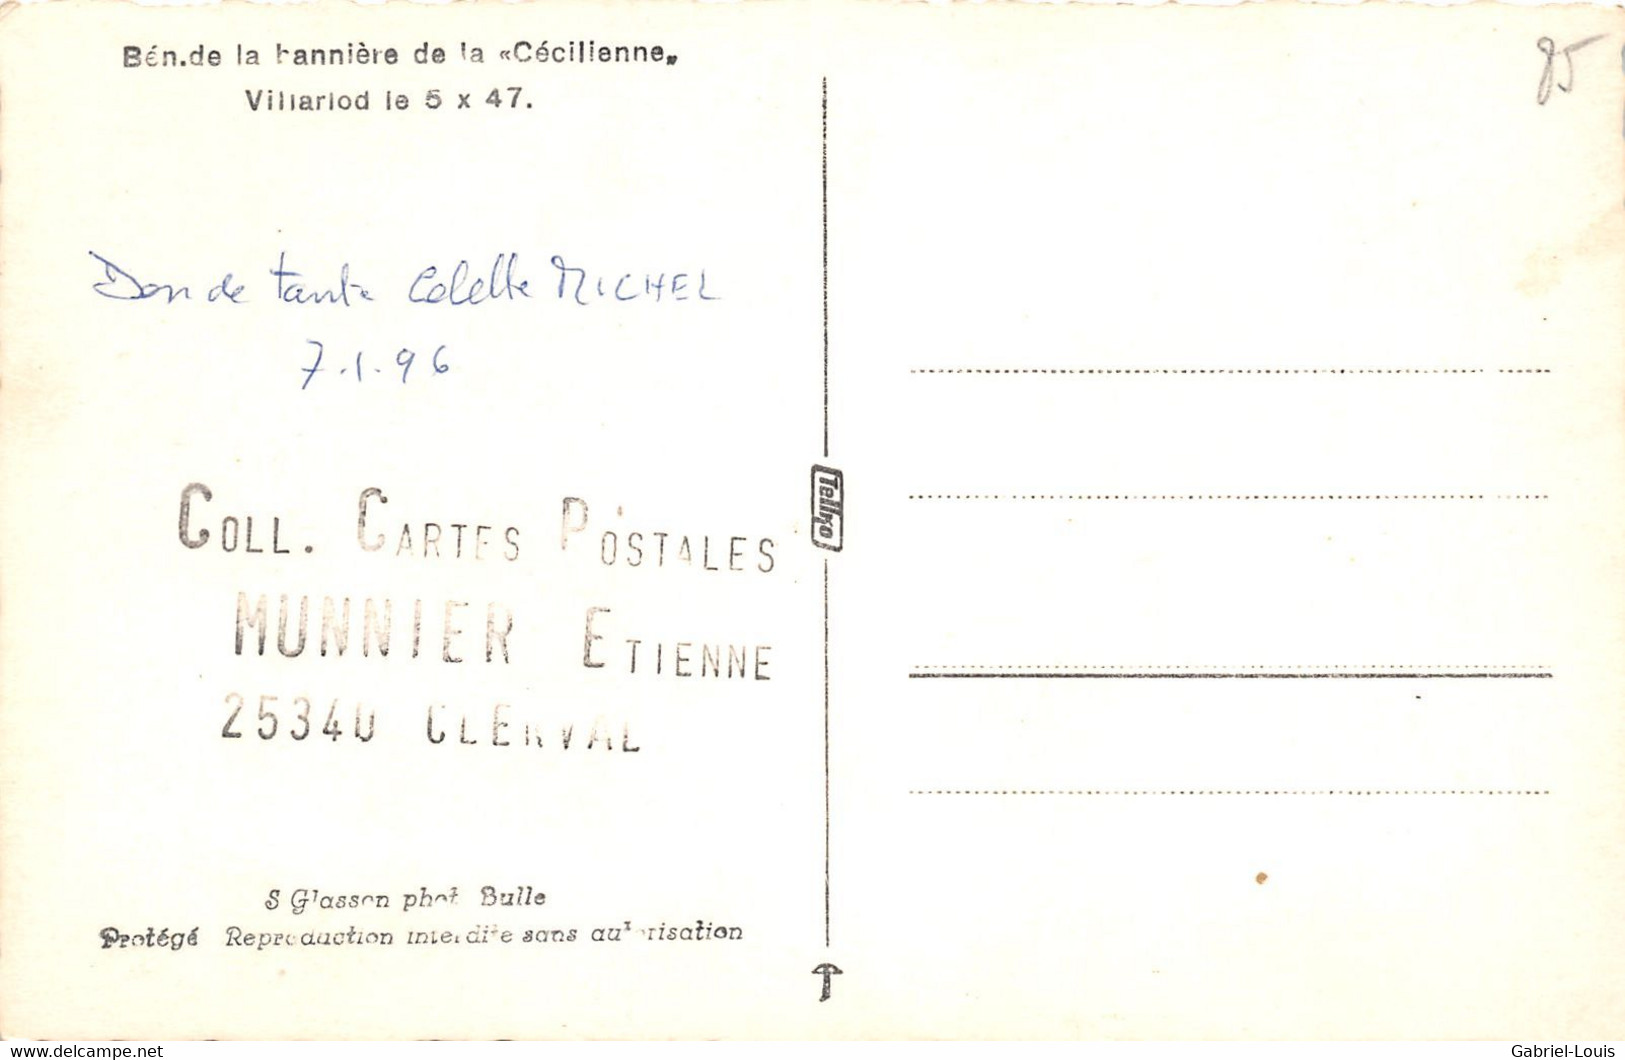 Villarlod Bén. De La Bannière De La Cécilienne 5.10.1947  Commune Du Gibloux ( Farvagny - Rossens - Corpataux- Le Glèbe) - Rossens